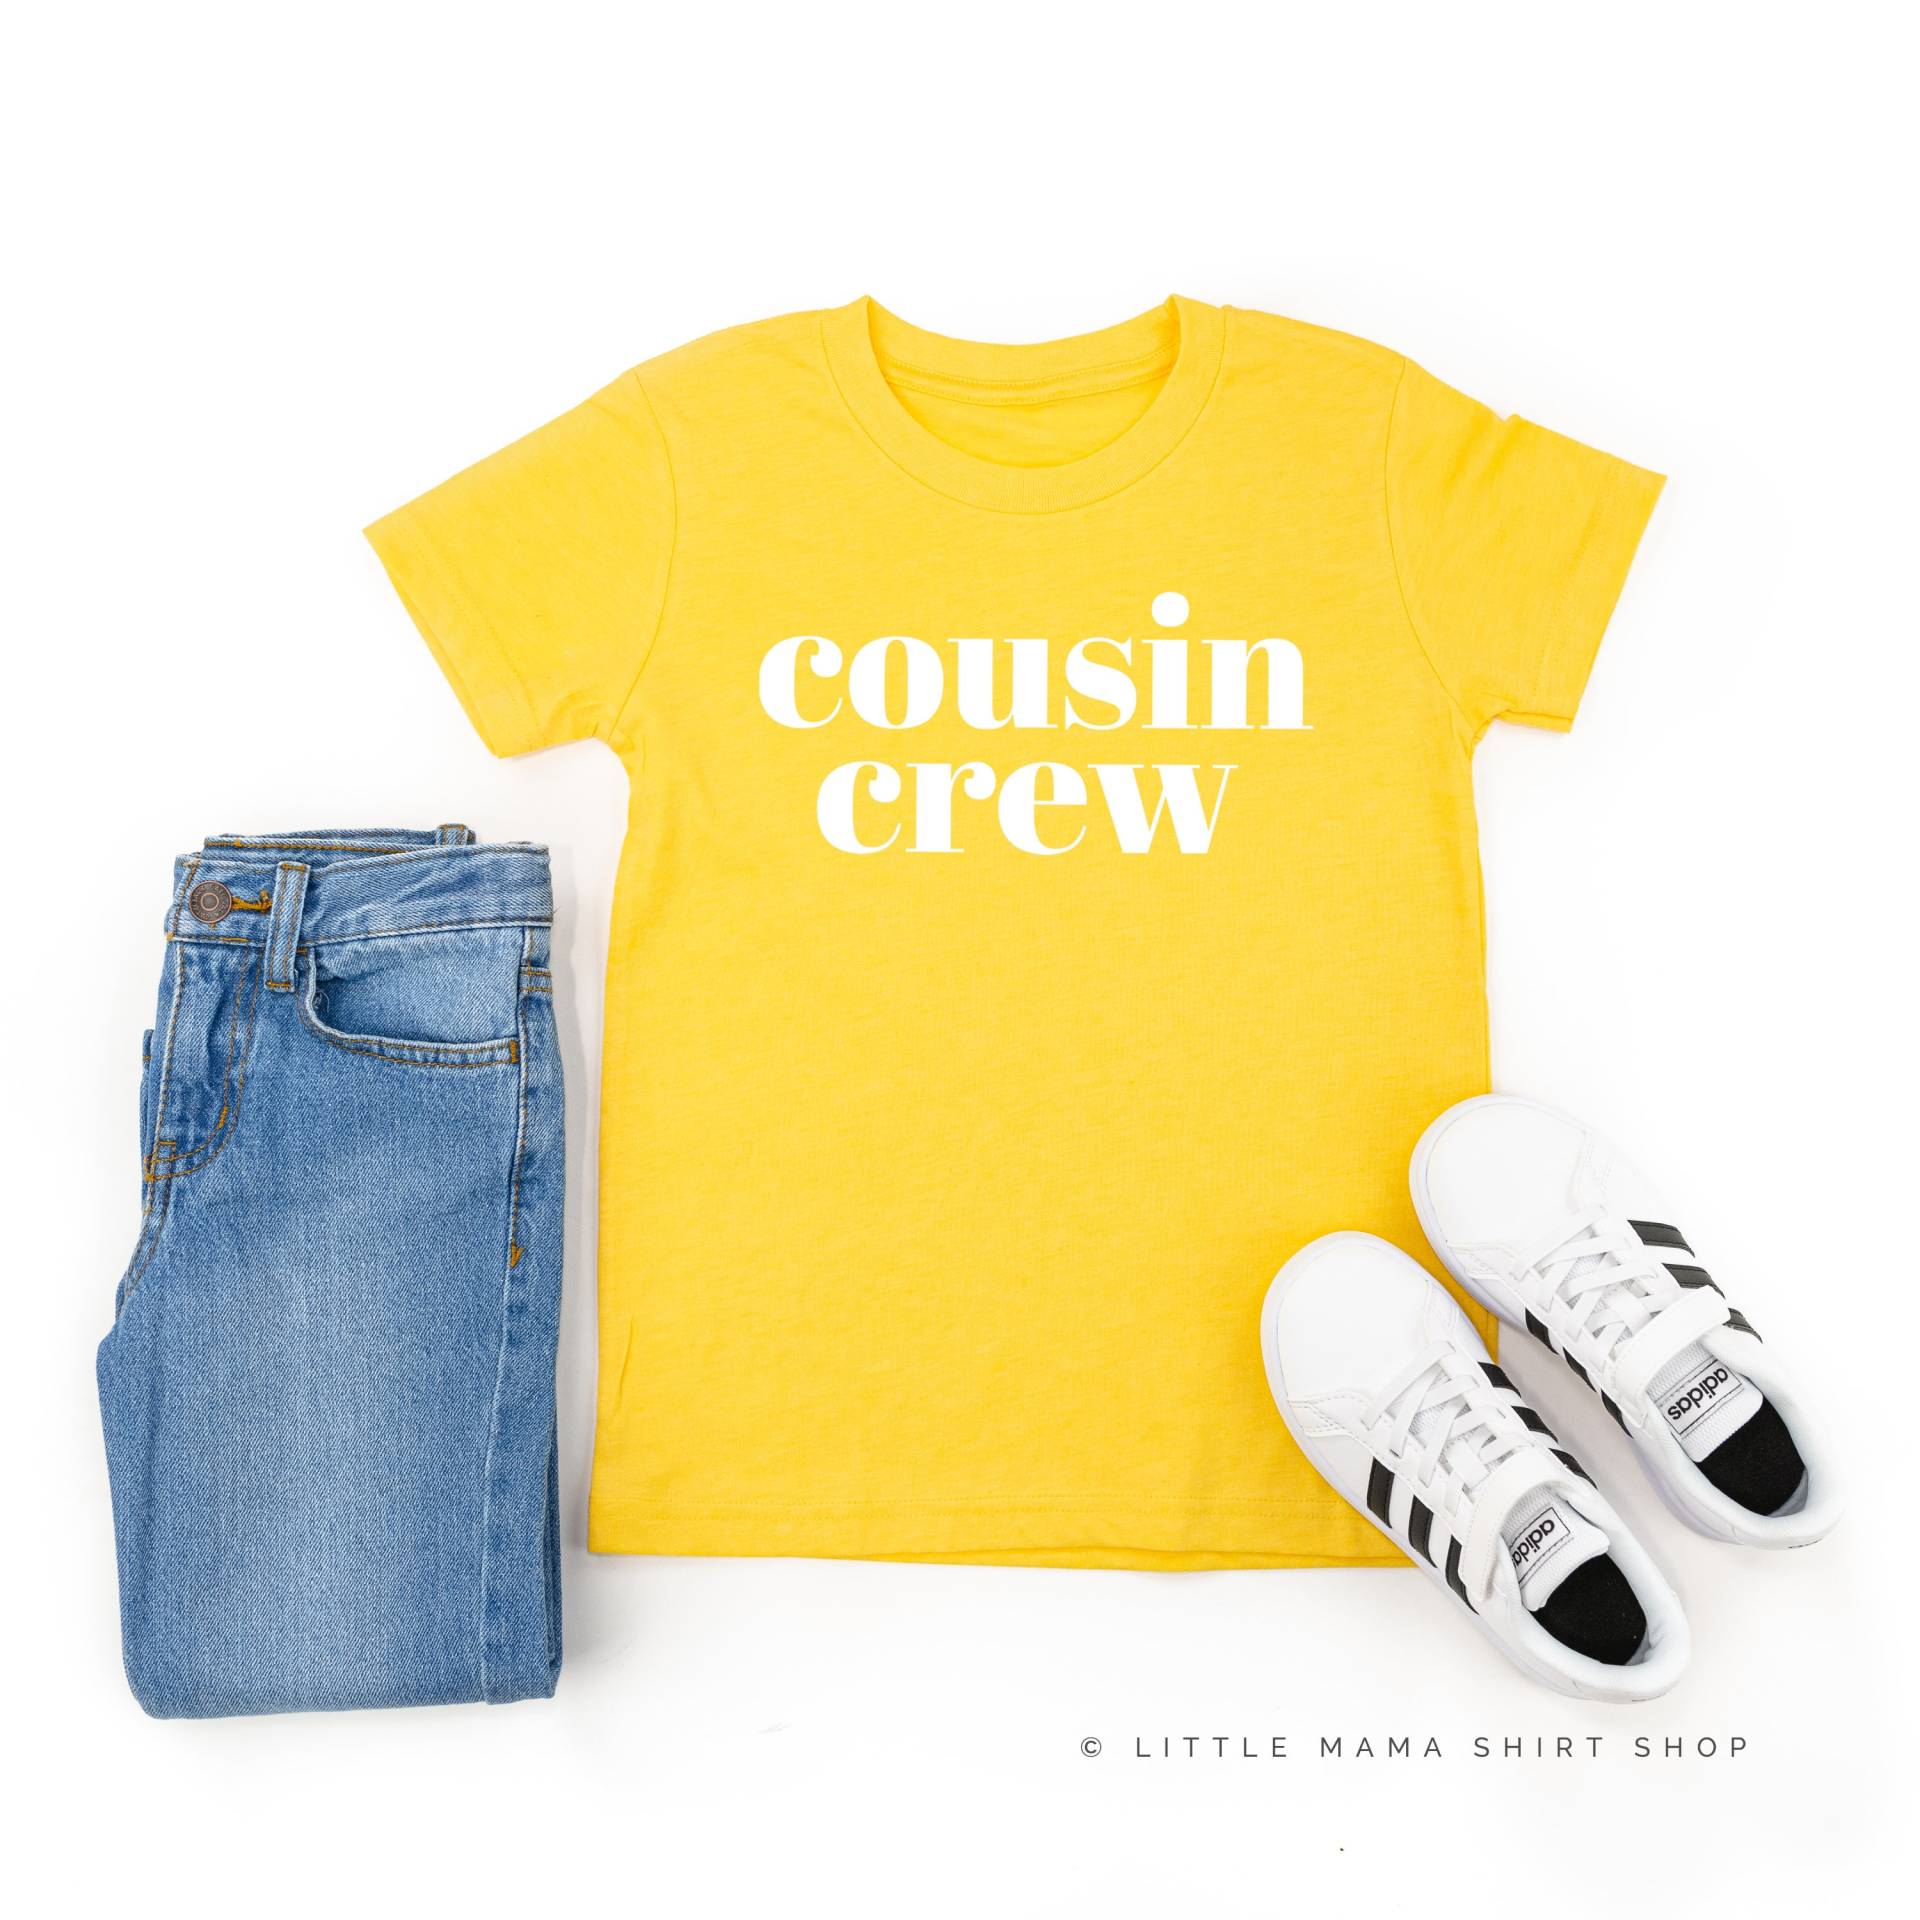 Cousin Crew - Classic | Tees Shirts Für Kinder Body Cousinen Grafik Reunion von LittleMamaShirtShop